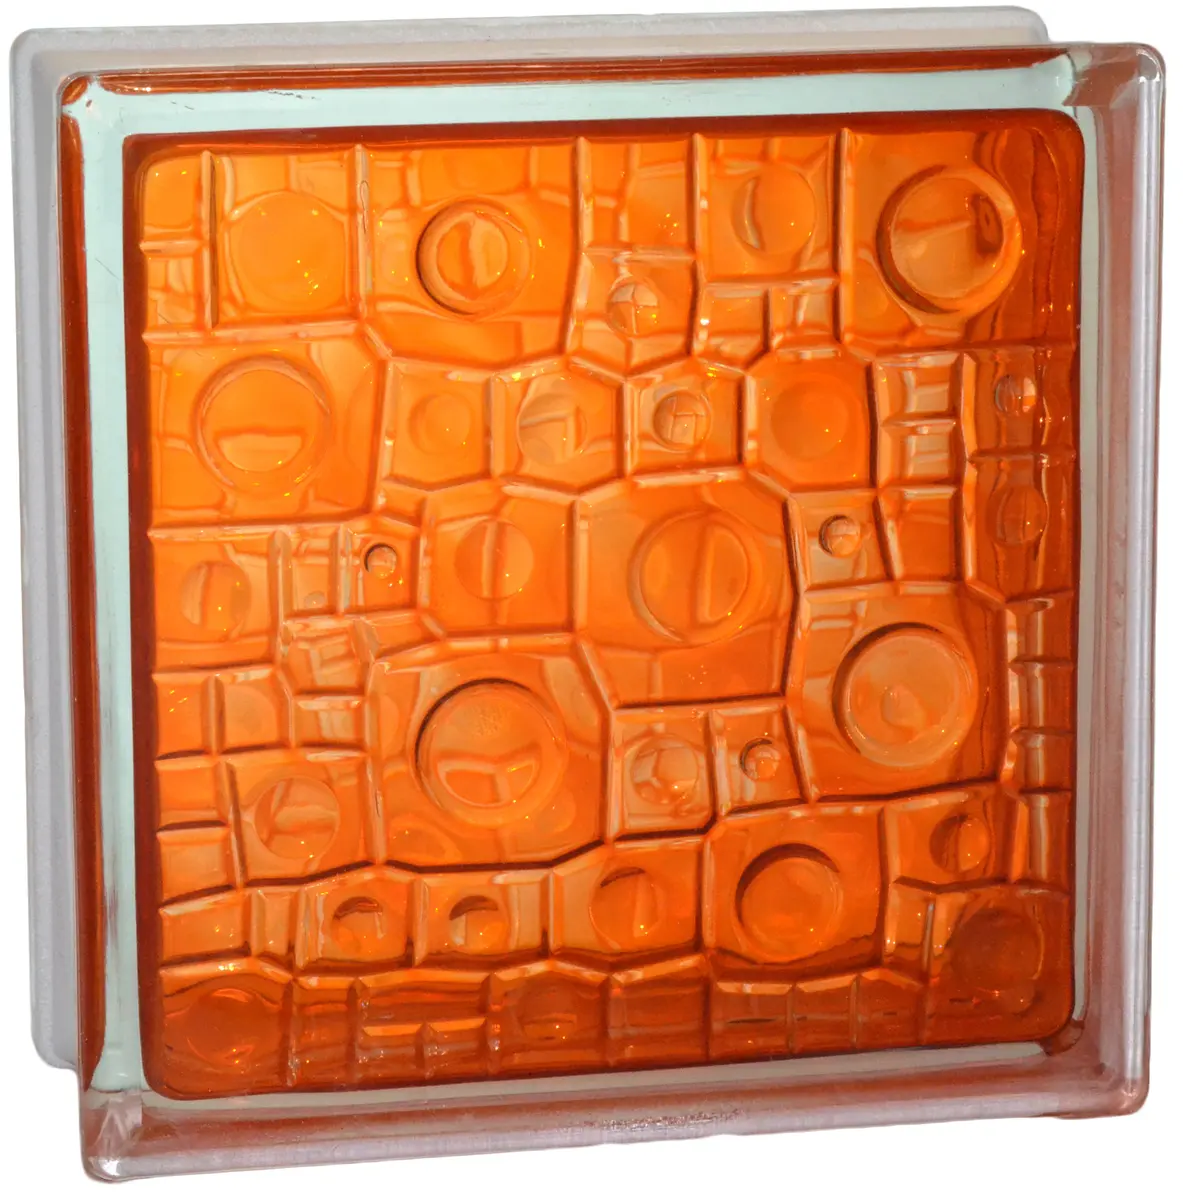 Стеклоблок Губка оранжевый 190*190*80 Glass Block